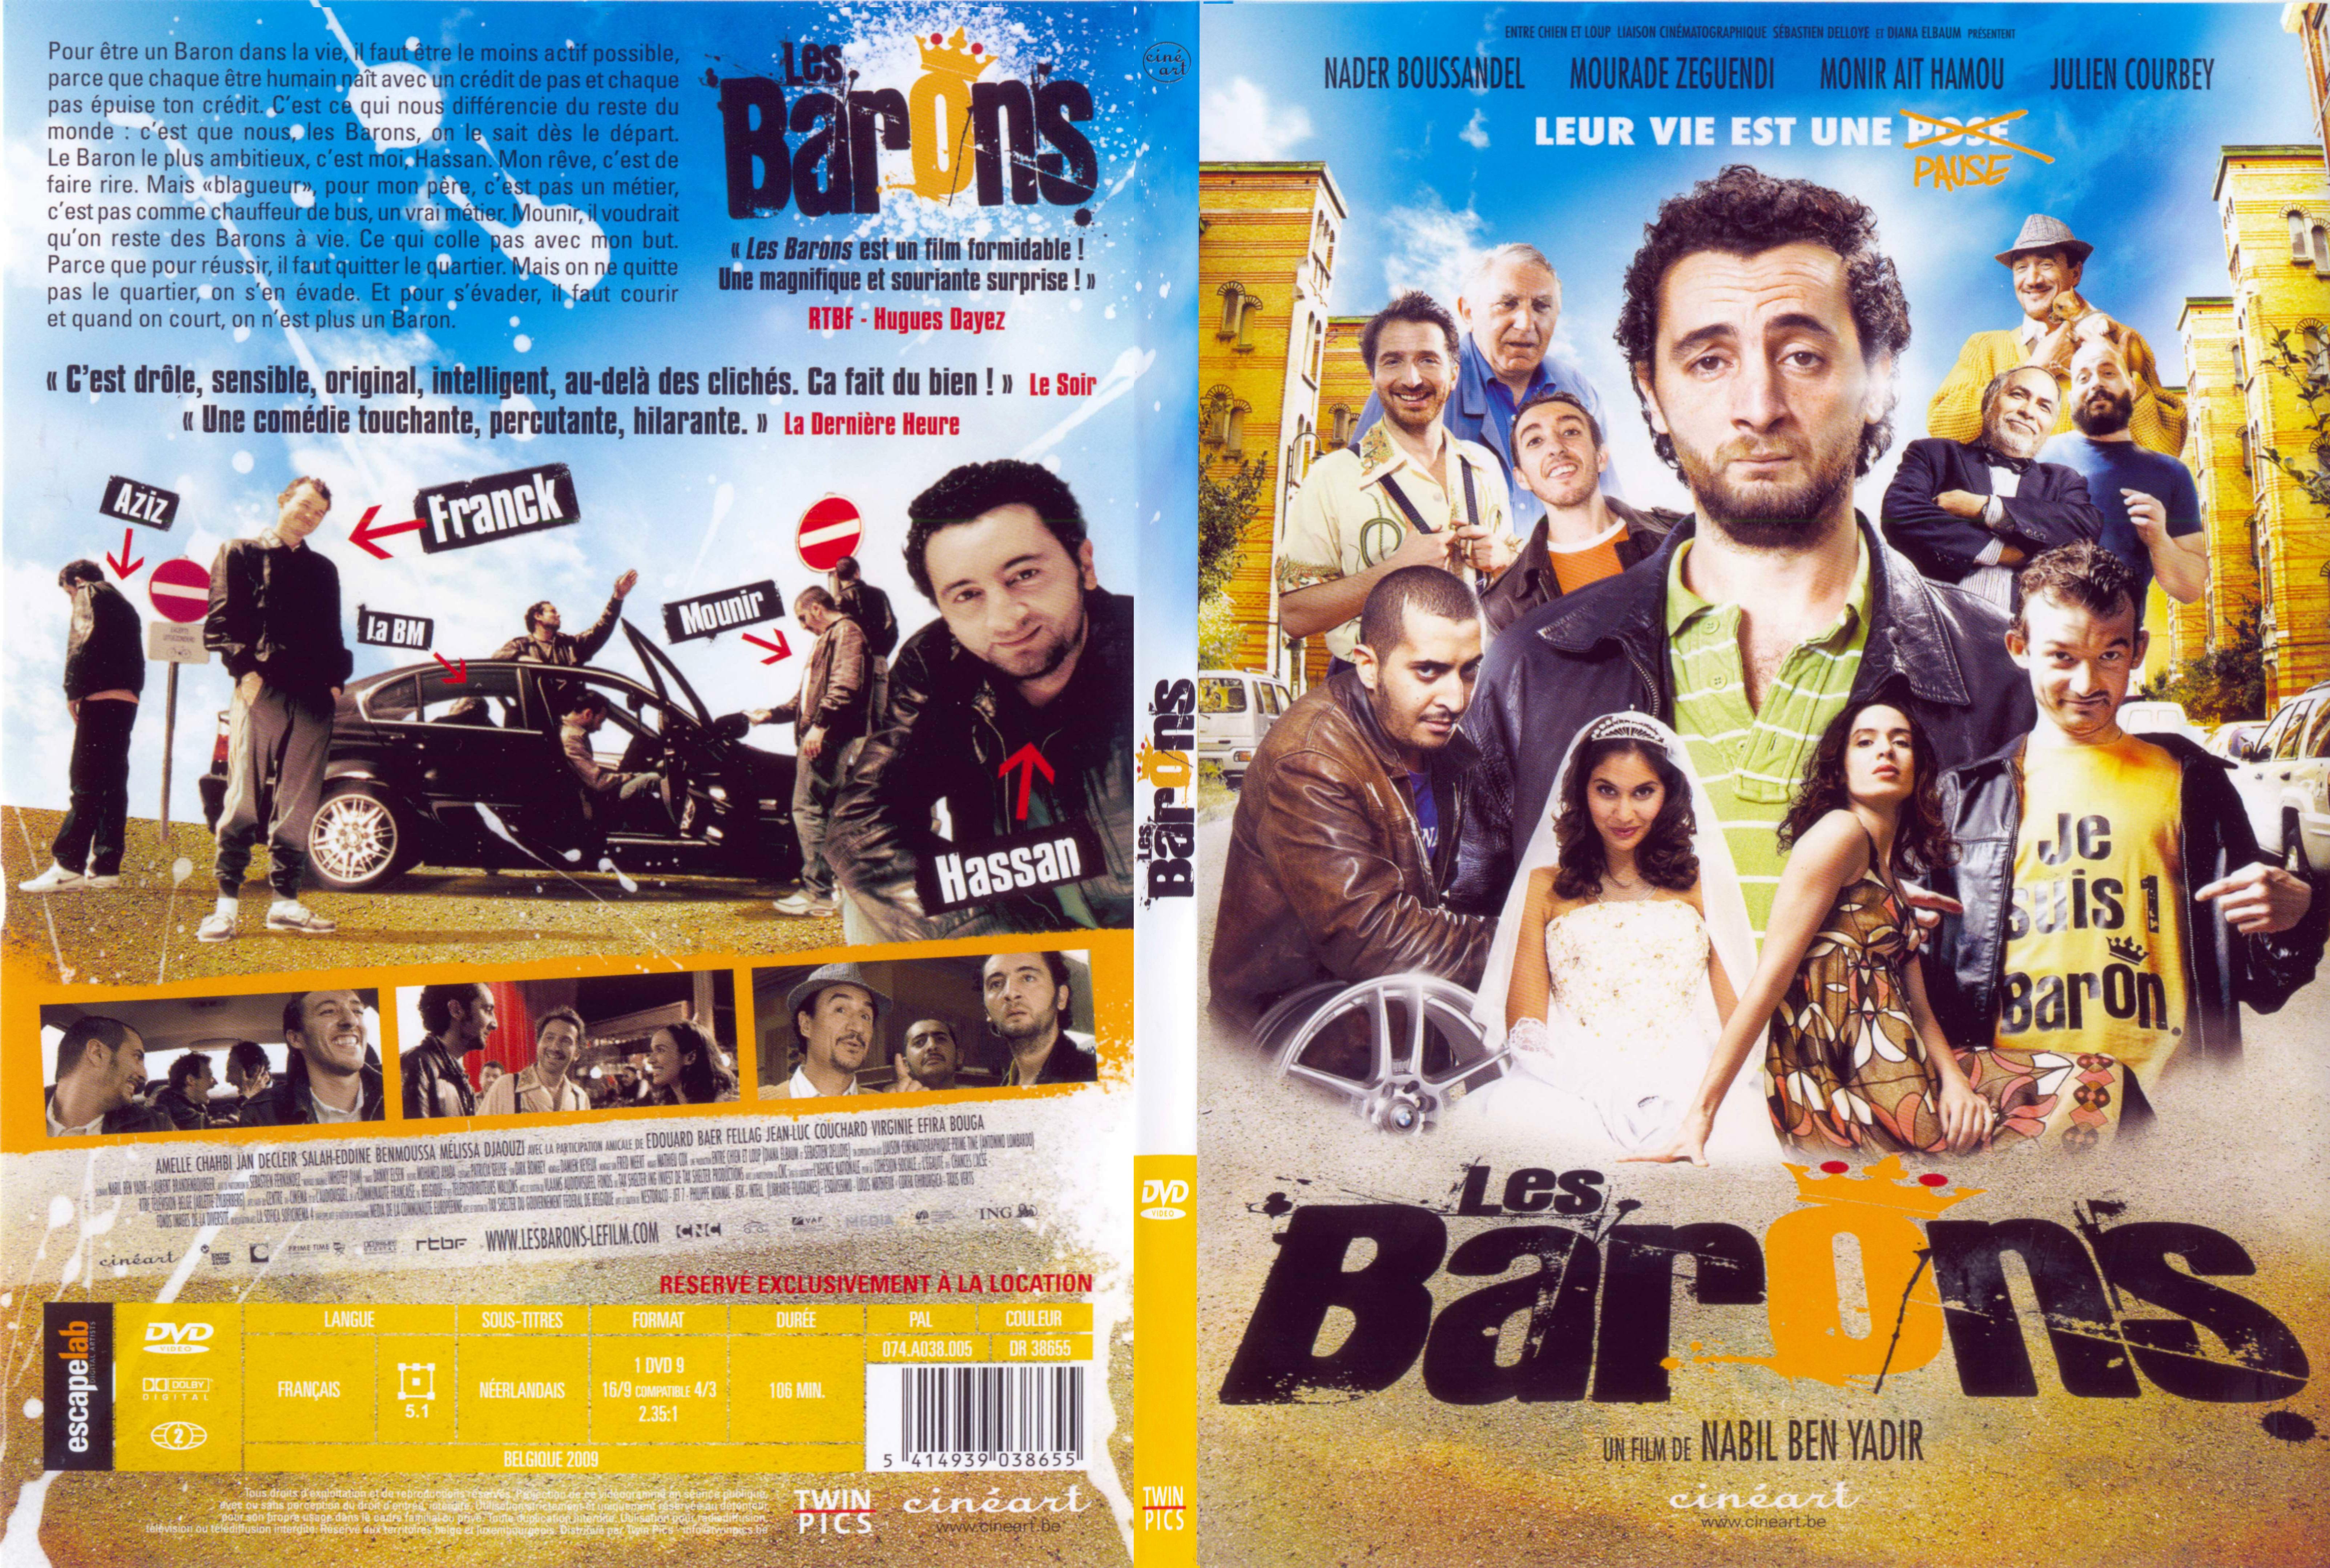 Jaquette DVD Les barons - SLIM